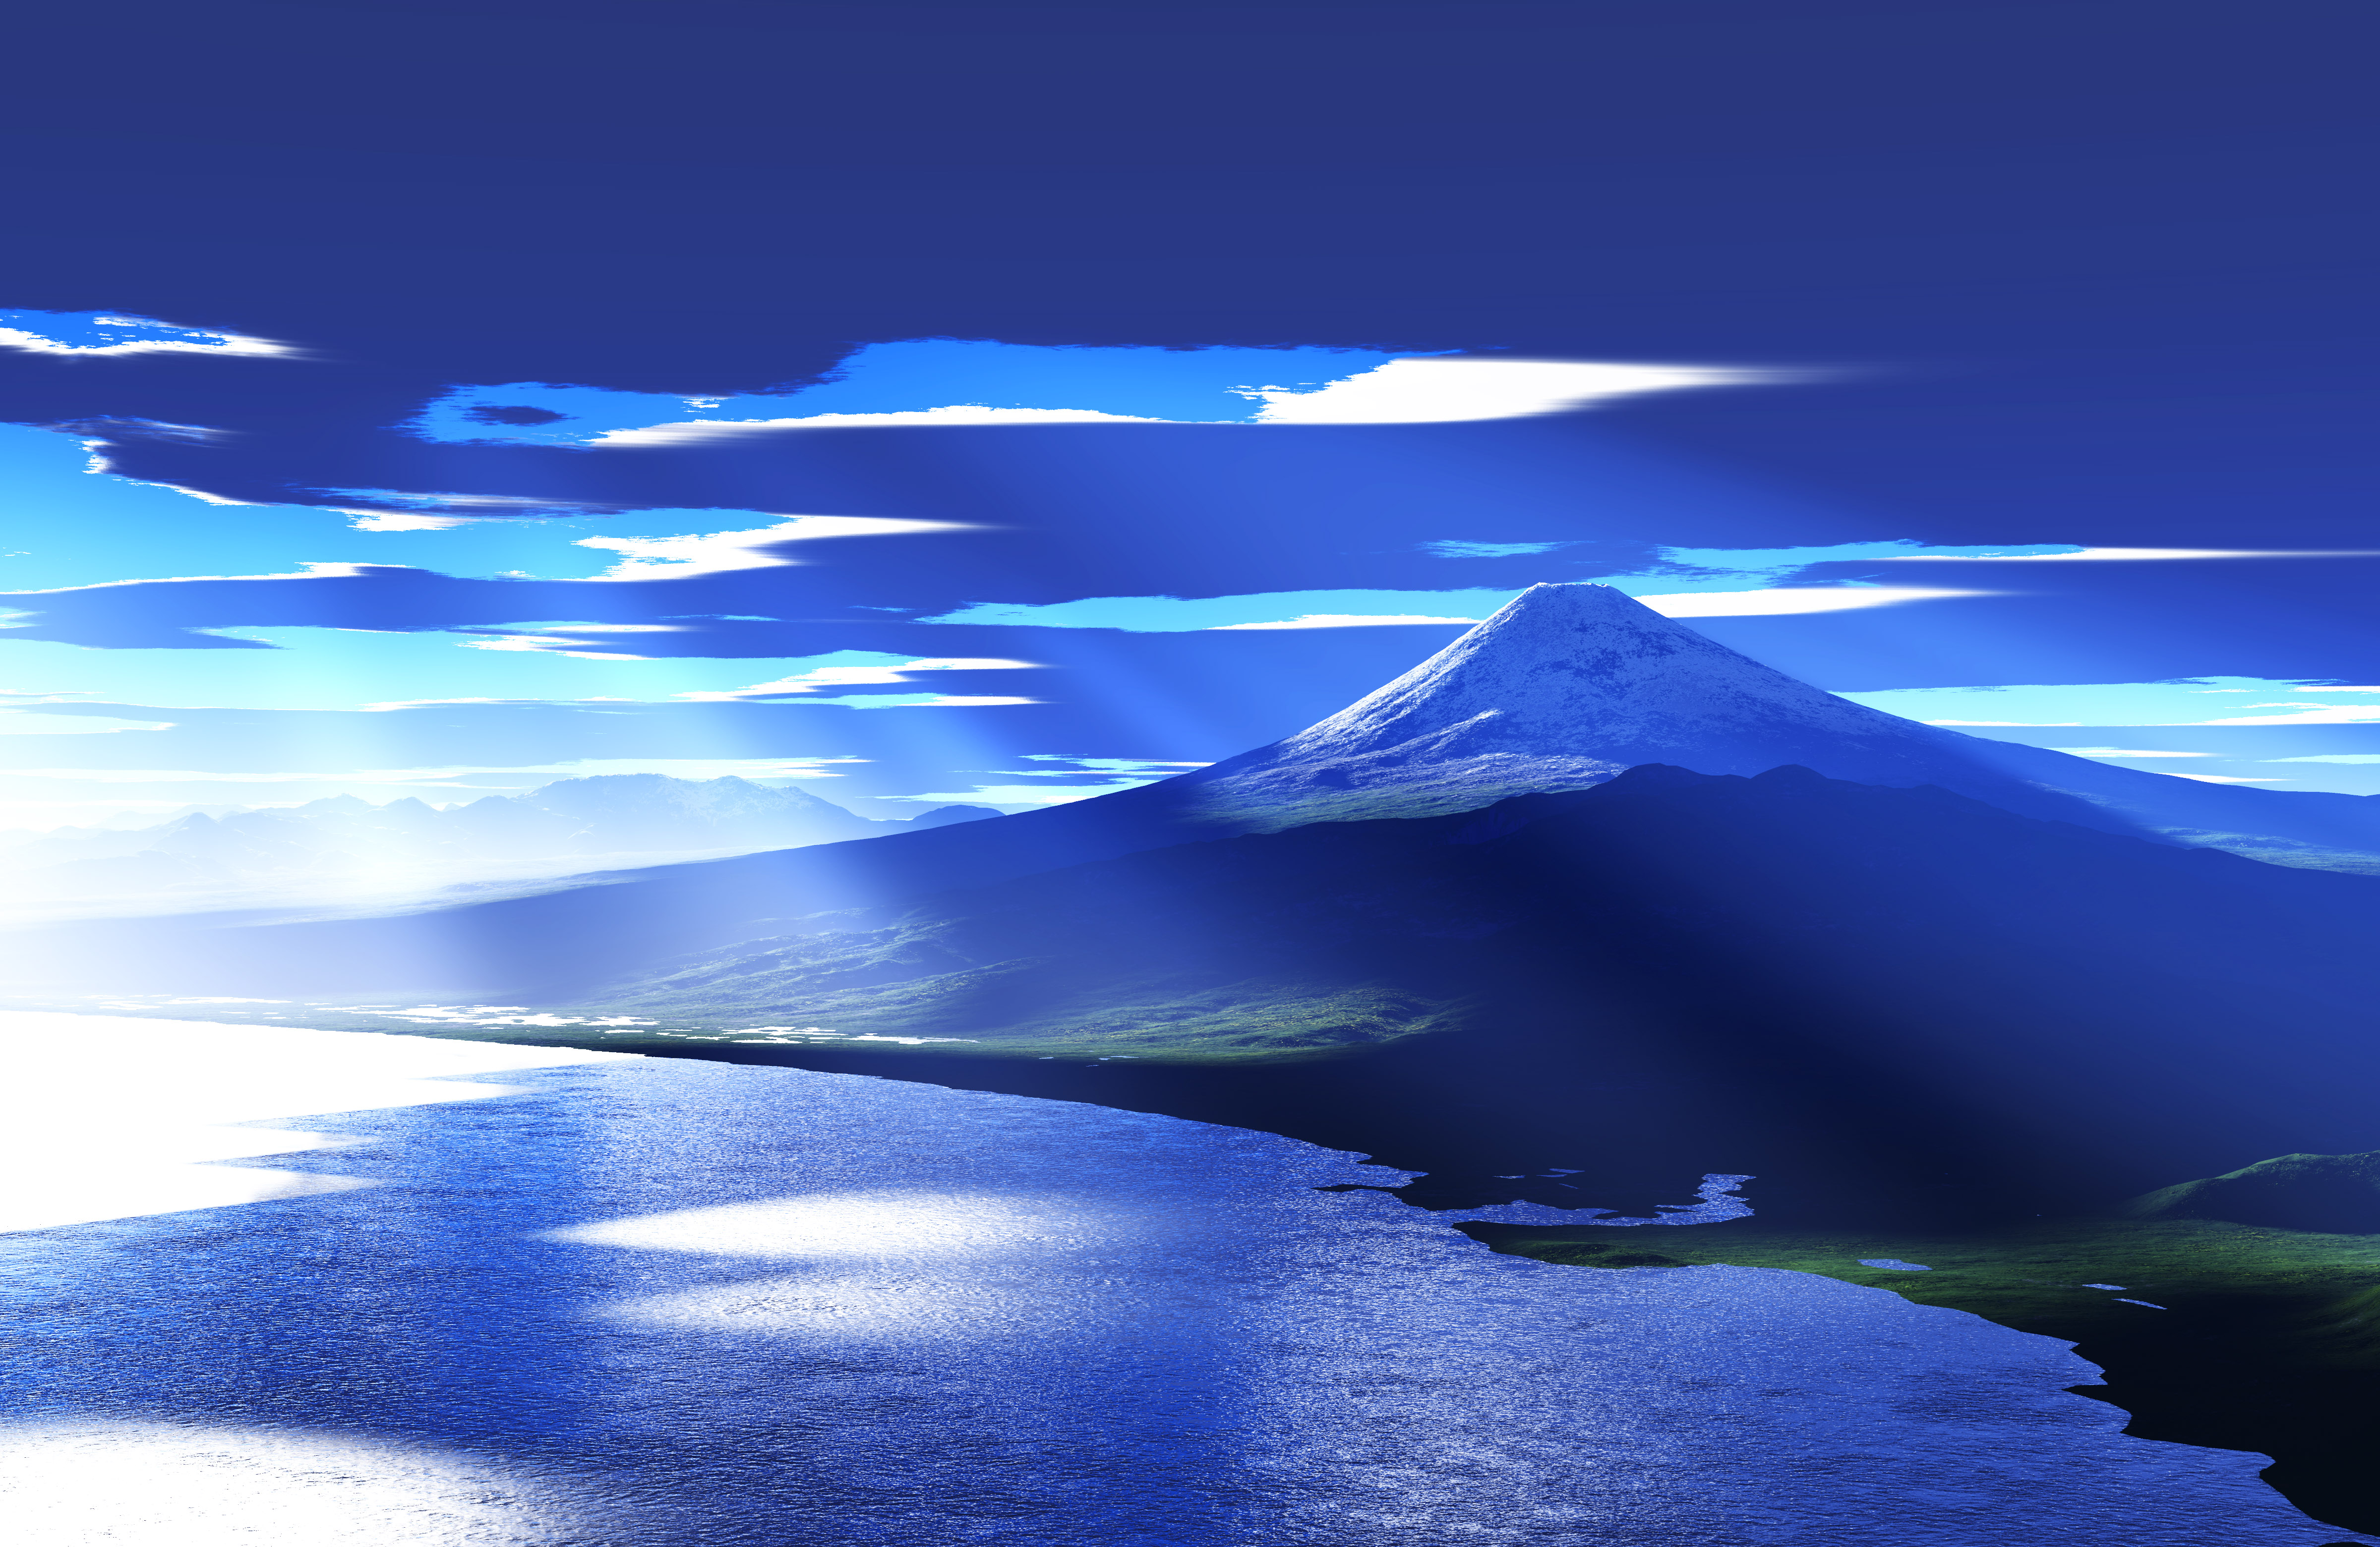 ゆんフリー写真素材集 : No. 3424 光芒の富士山 [CG / CG]